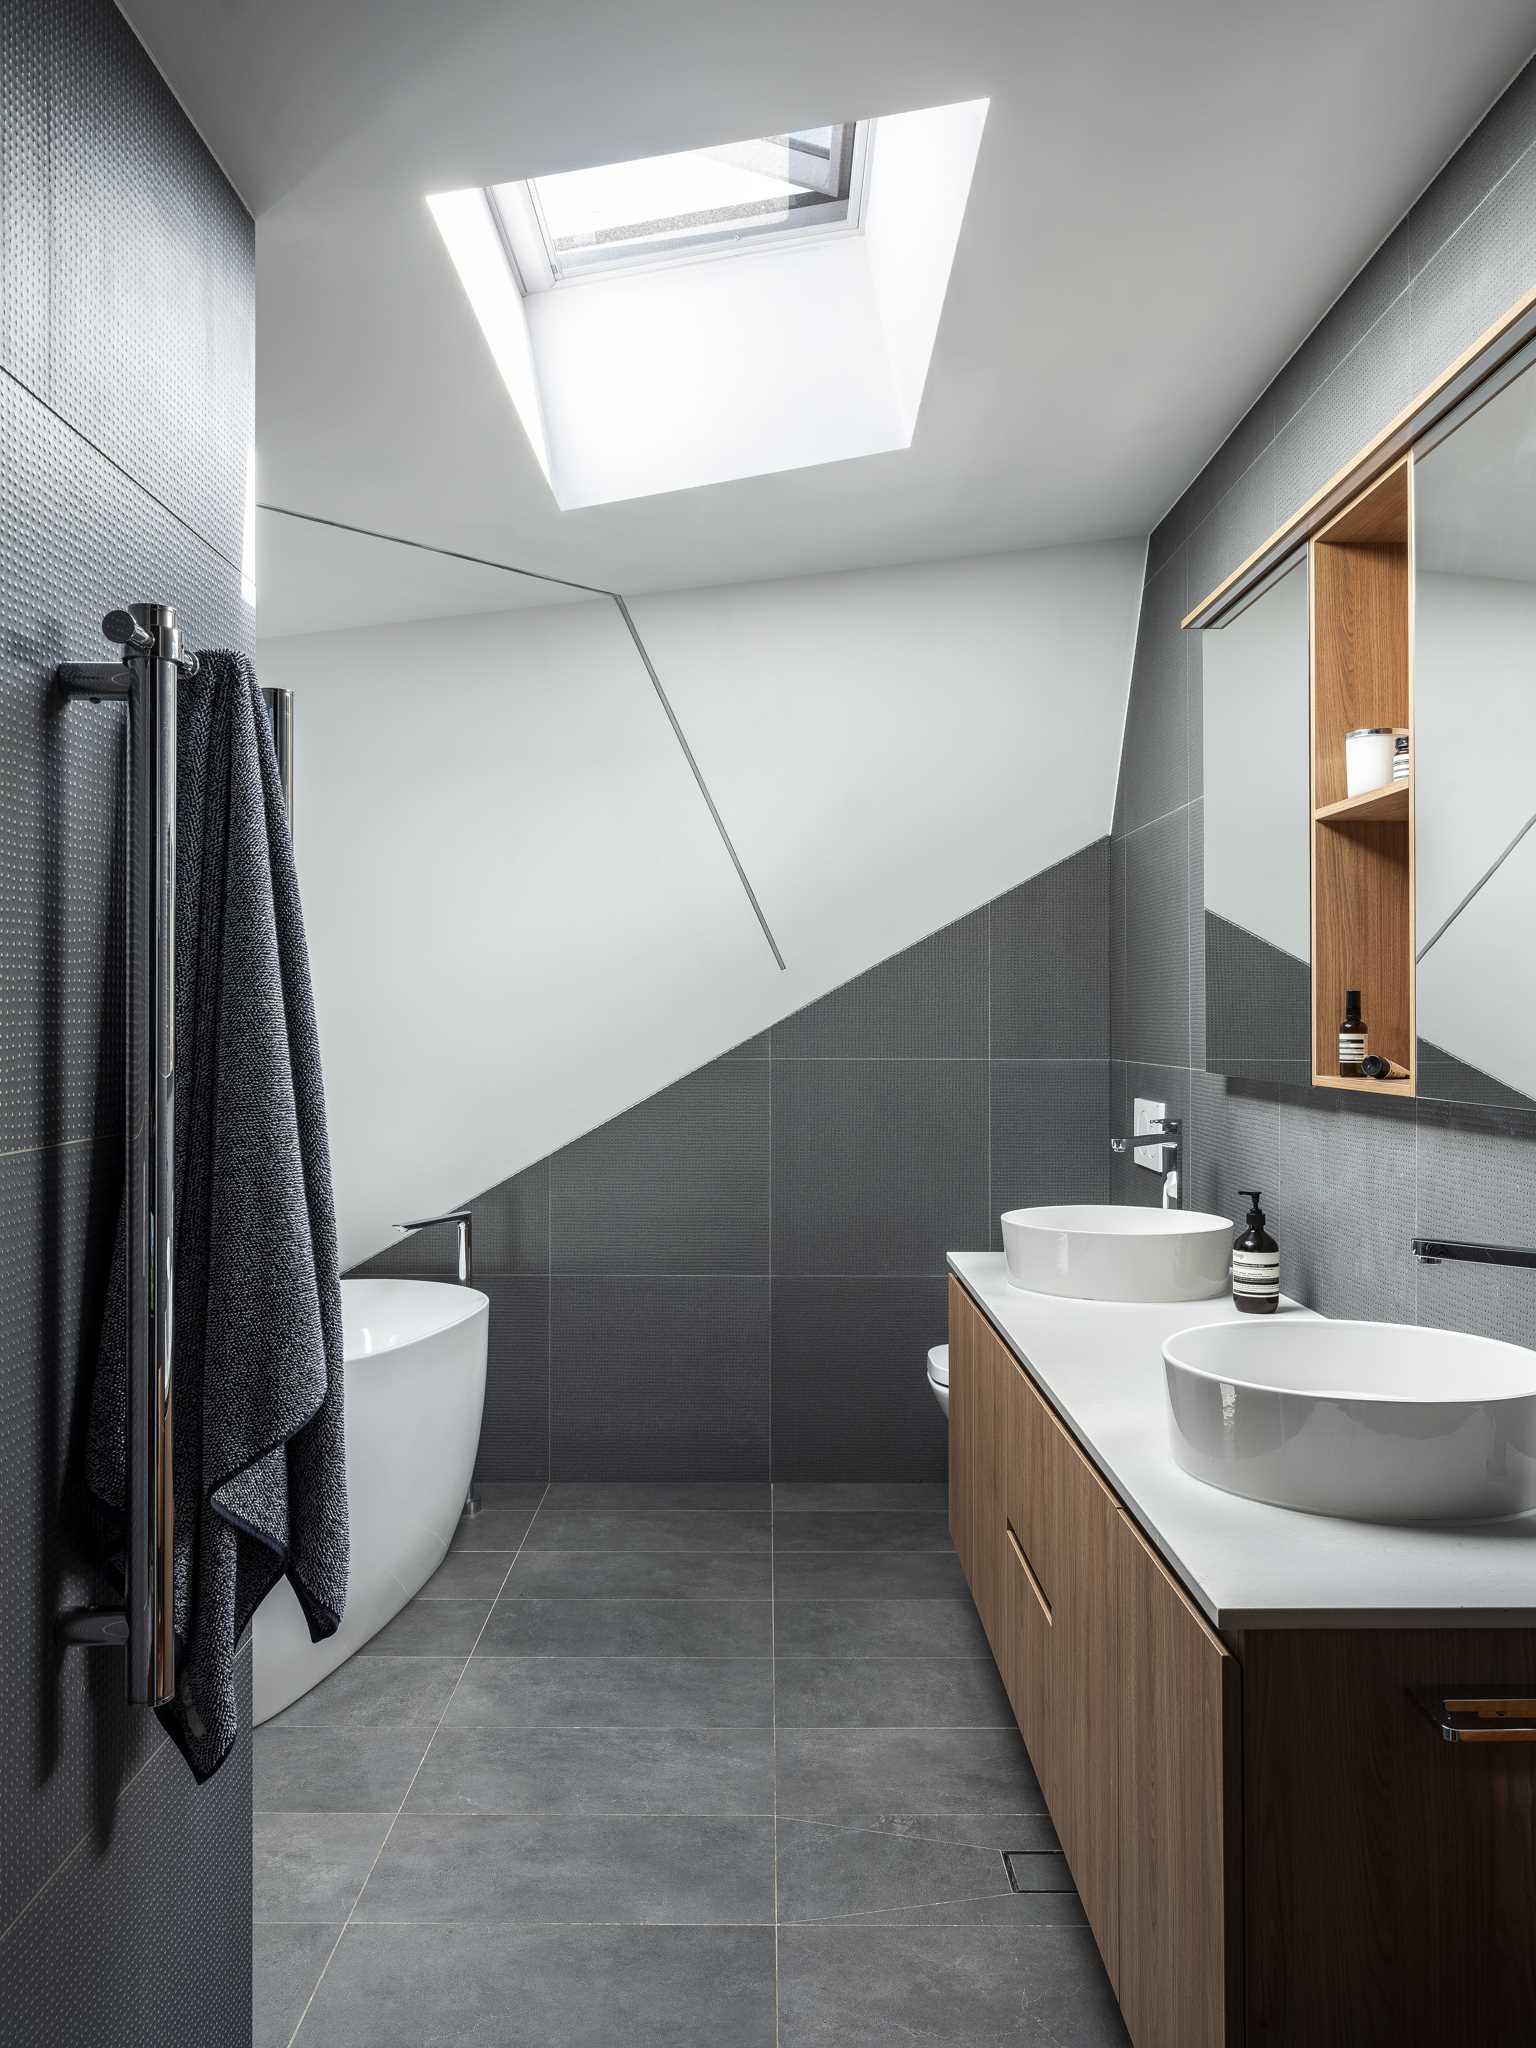 در این حمام، کاشی‌های خا،تری که تا حدی با طرح مورب نصب شده‌اند، جذابیت بصری ایجاد می‌کنند و با دیوارهای سفید و روشویی چوبی جفت می‌شوند.  نورگیر به روشن نگه داشتن حمام کمک می کند.